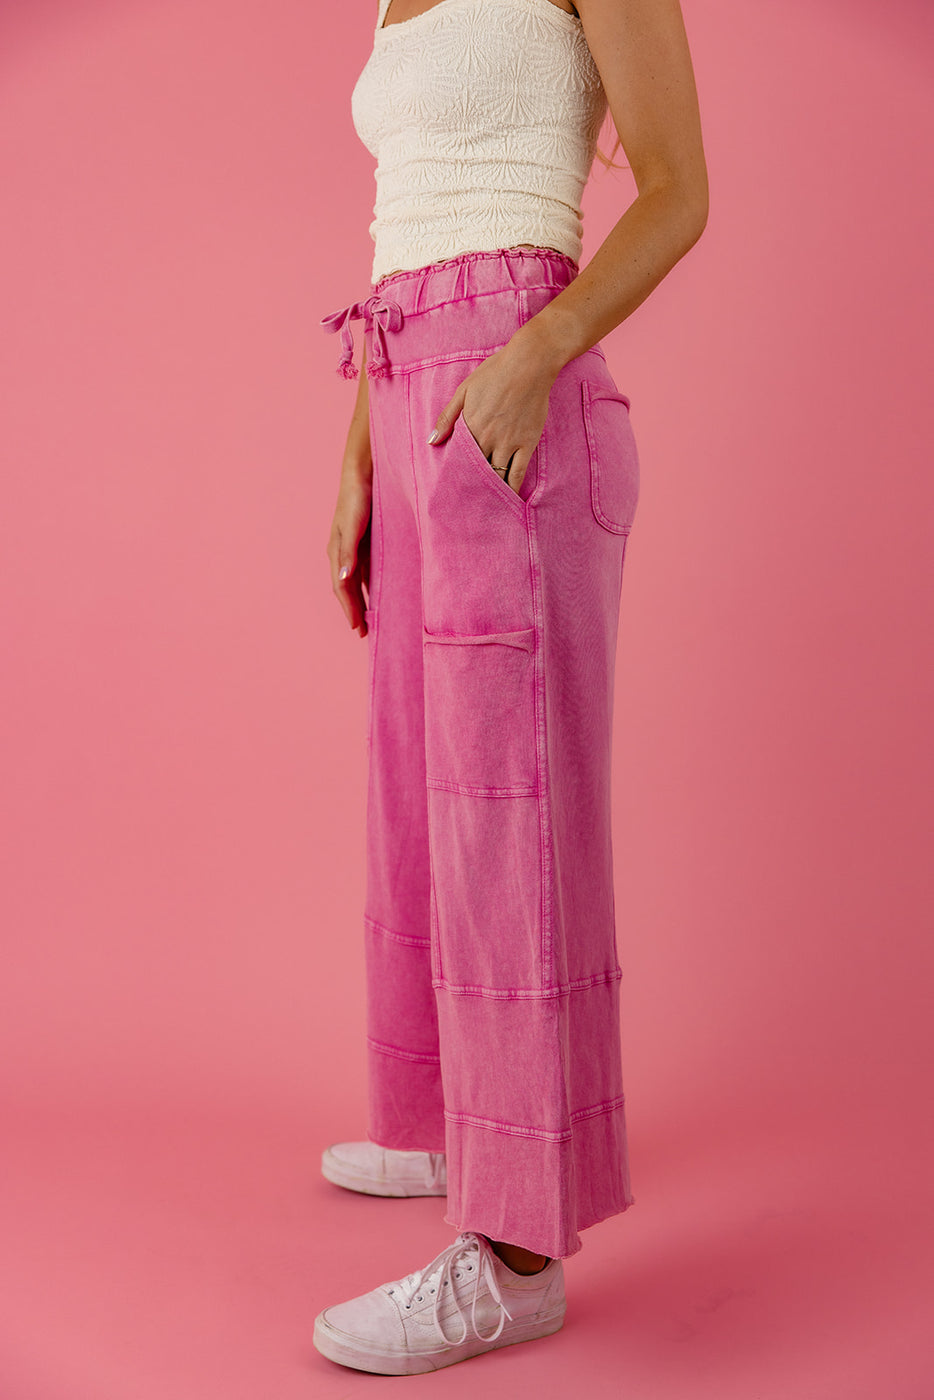 a woman wearing pink pants